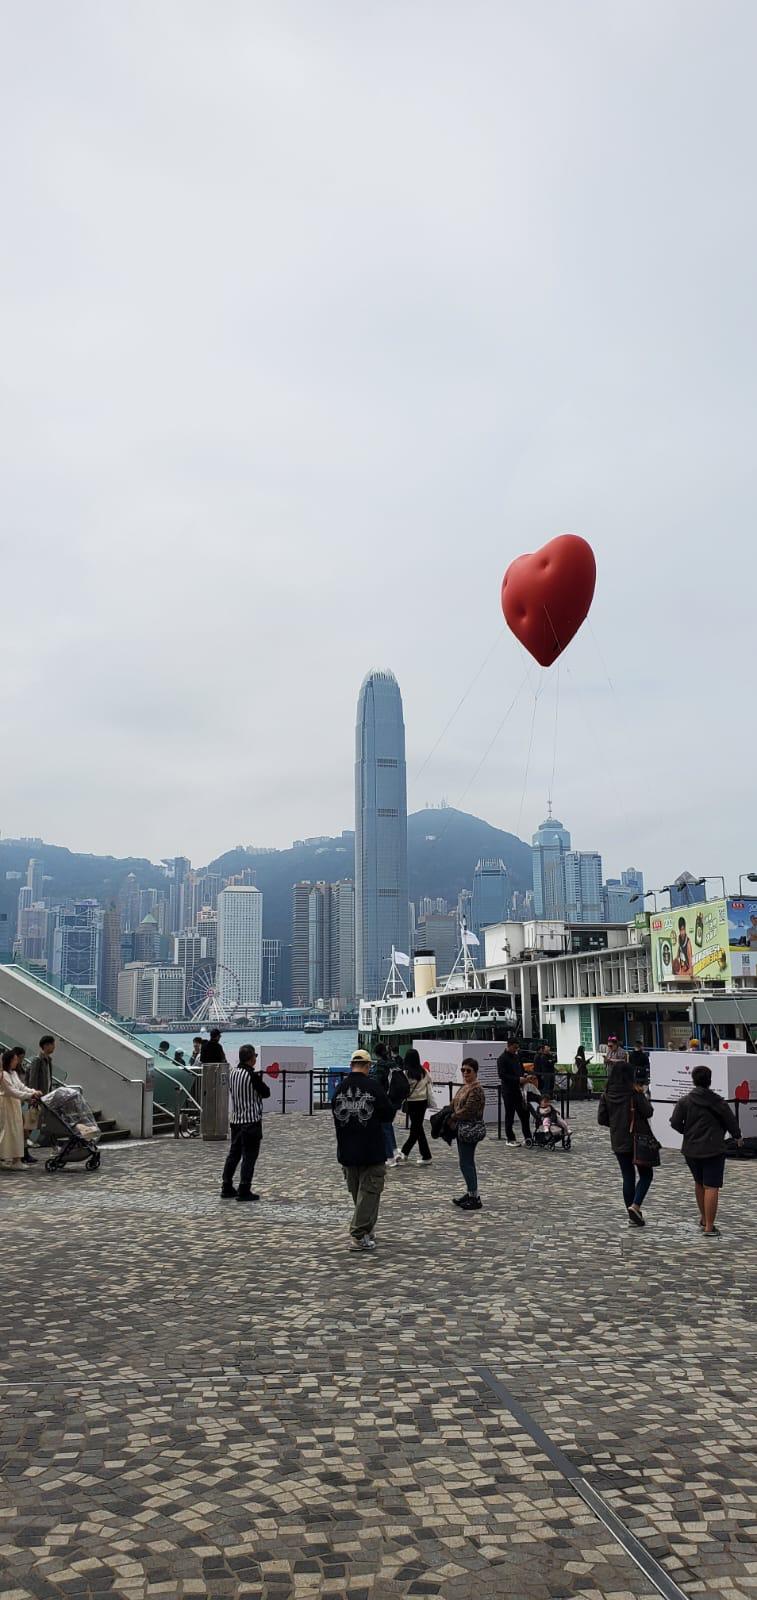 Chubby Hearts 活动共吸引超过70万名市民及游客观赏。香港设计中心fb